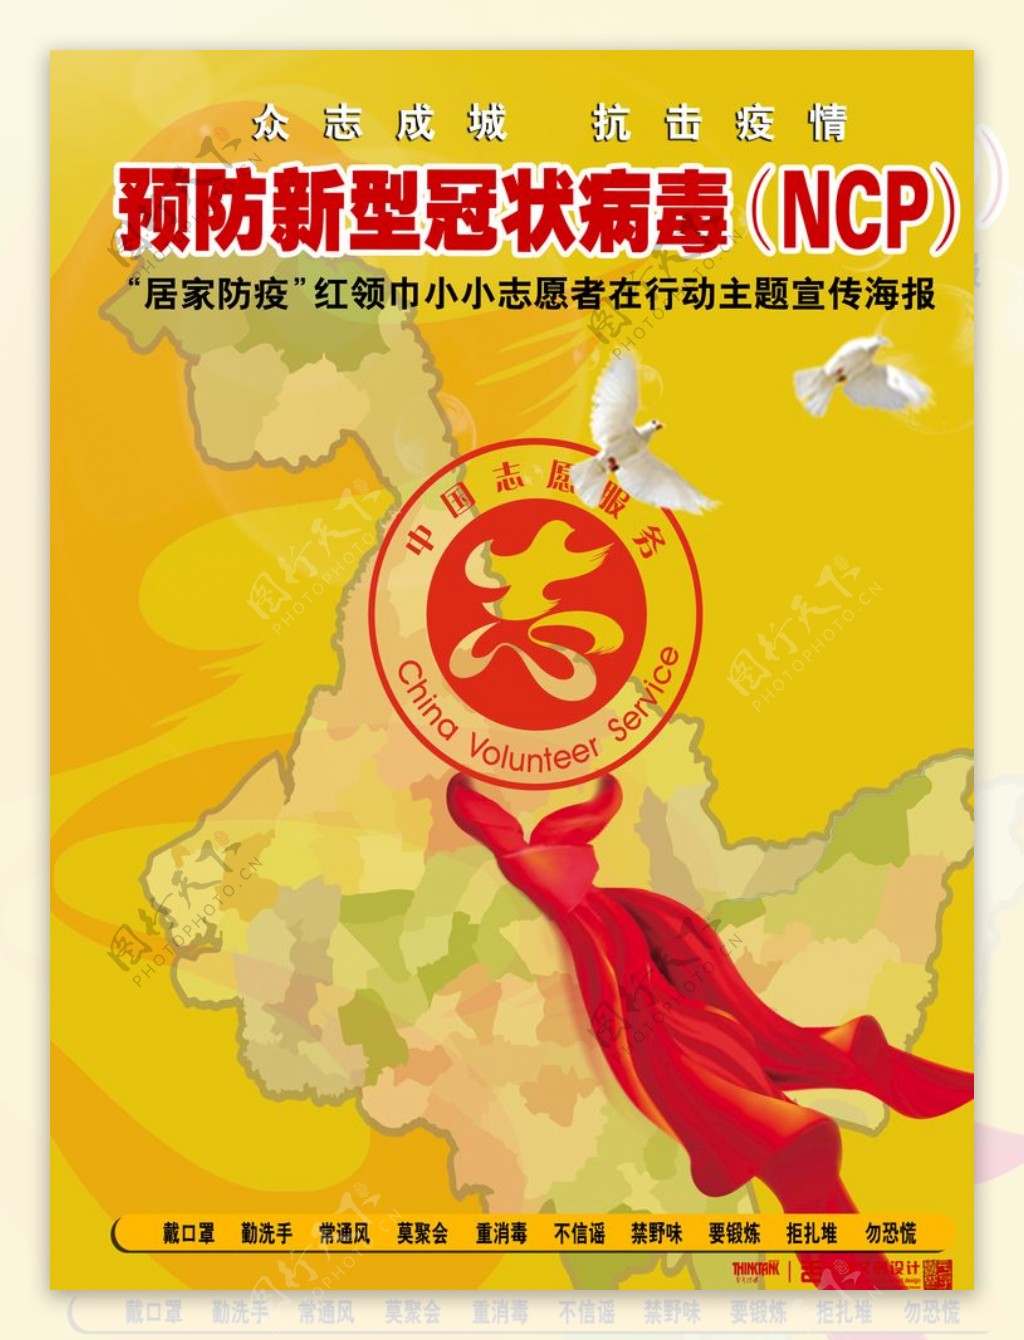 预防新型冠状病毒NCP海报